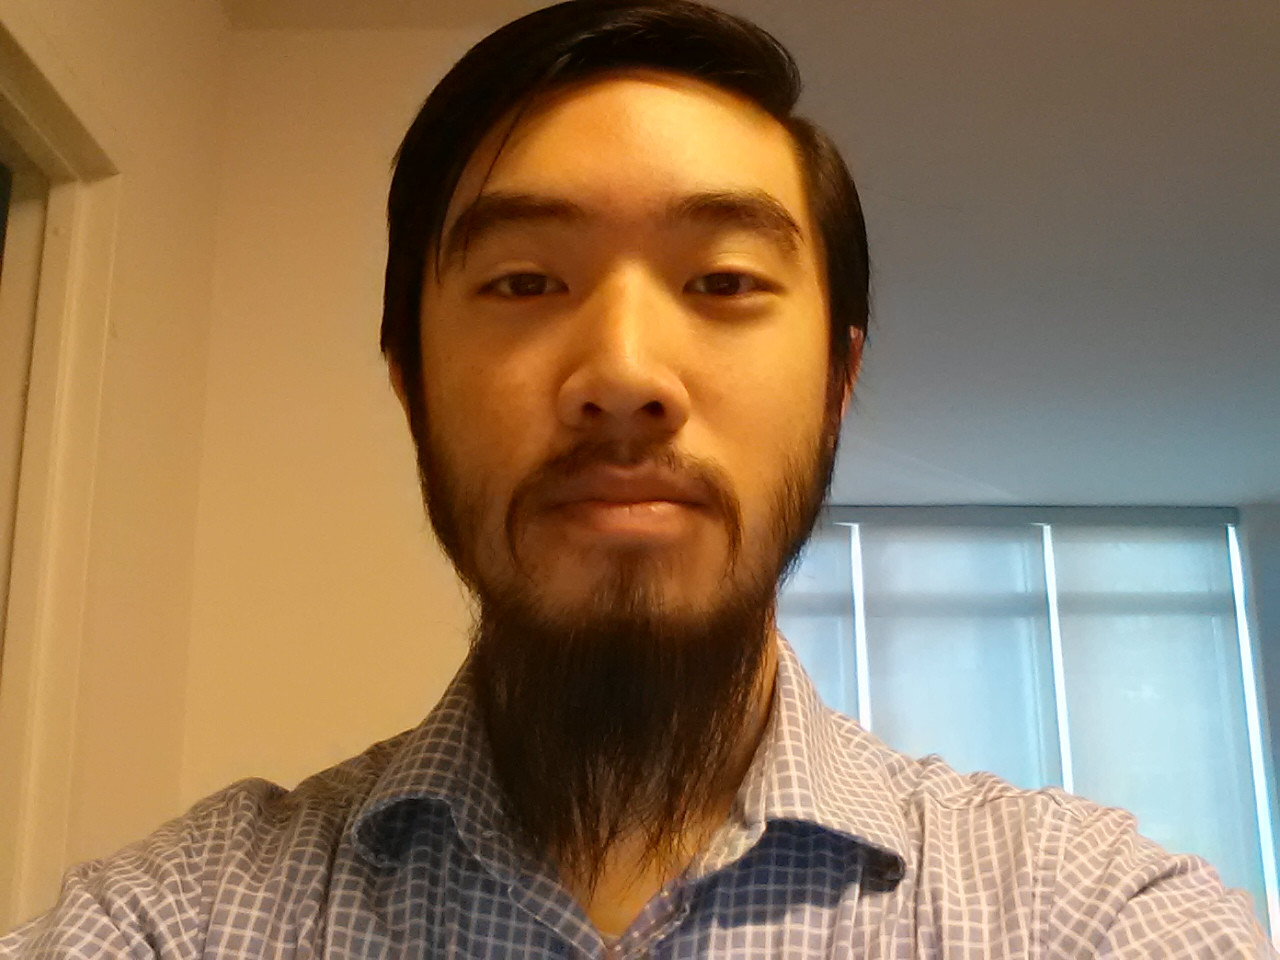 Во сколько лет растет борода у азиатов